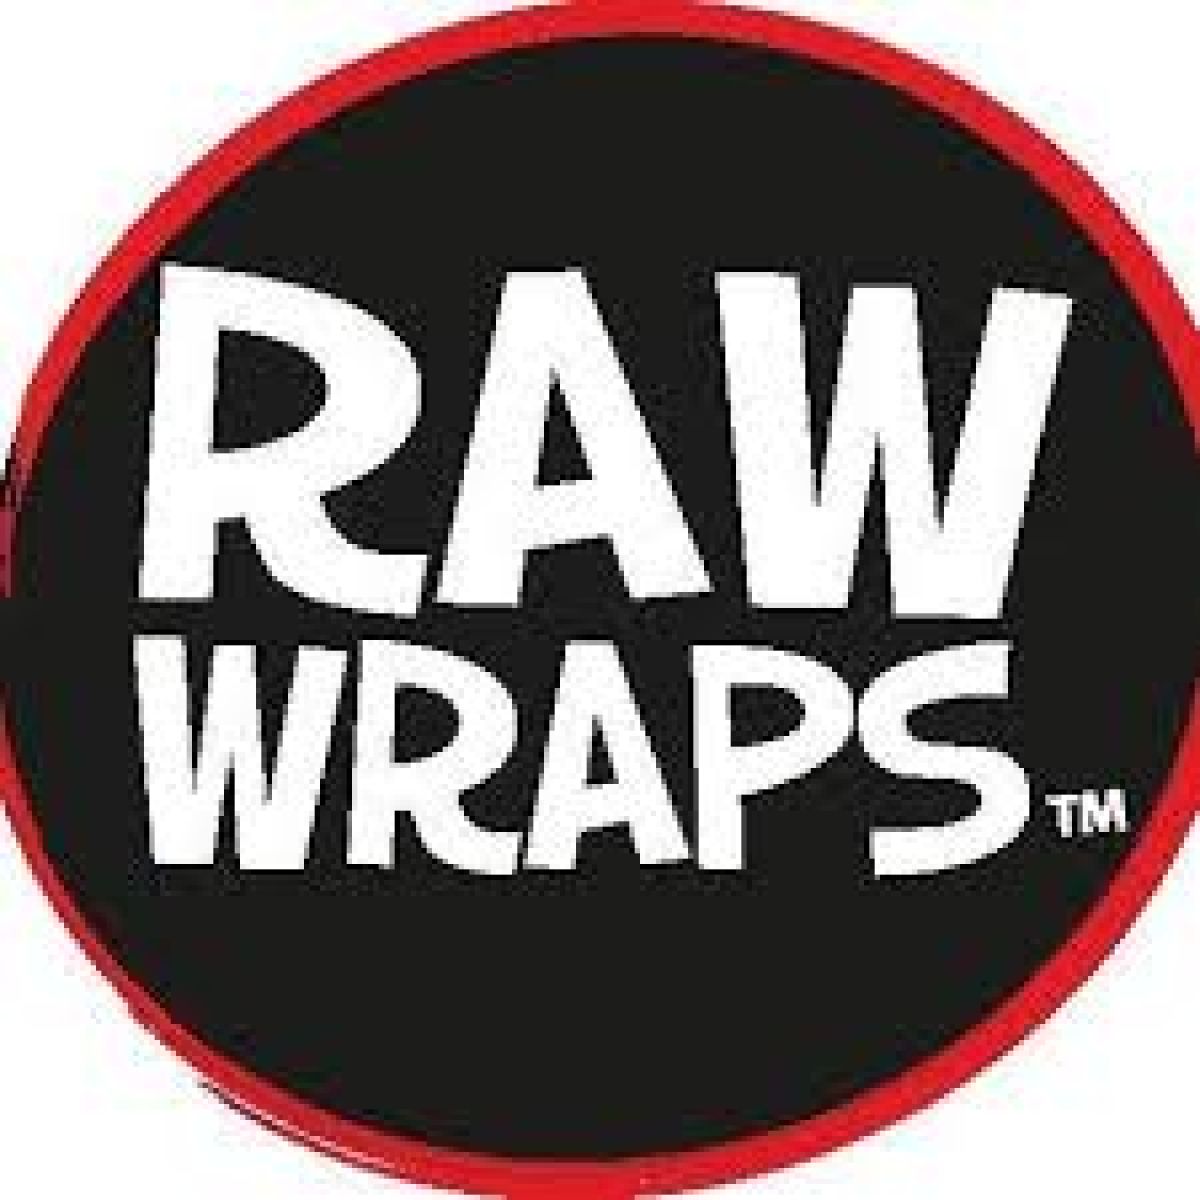 Raw Wraps